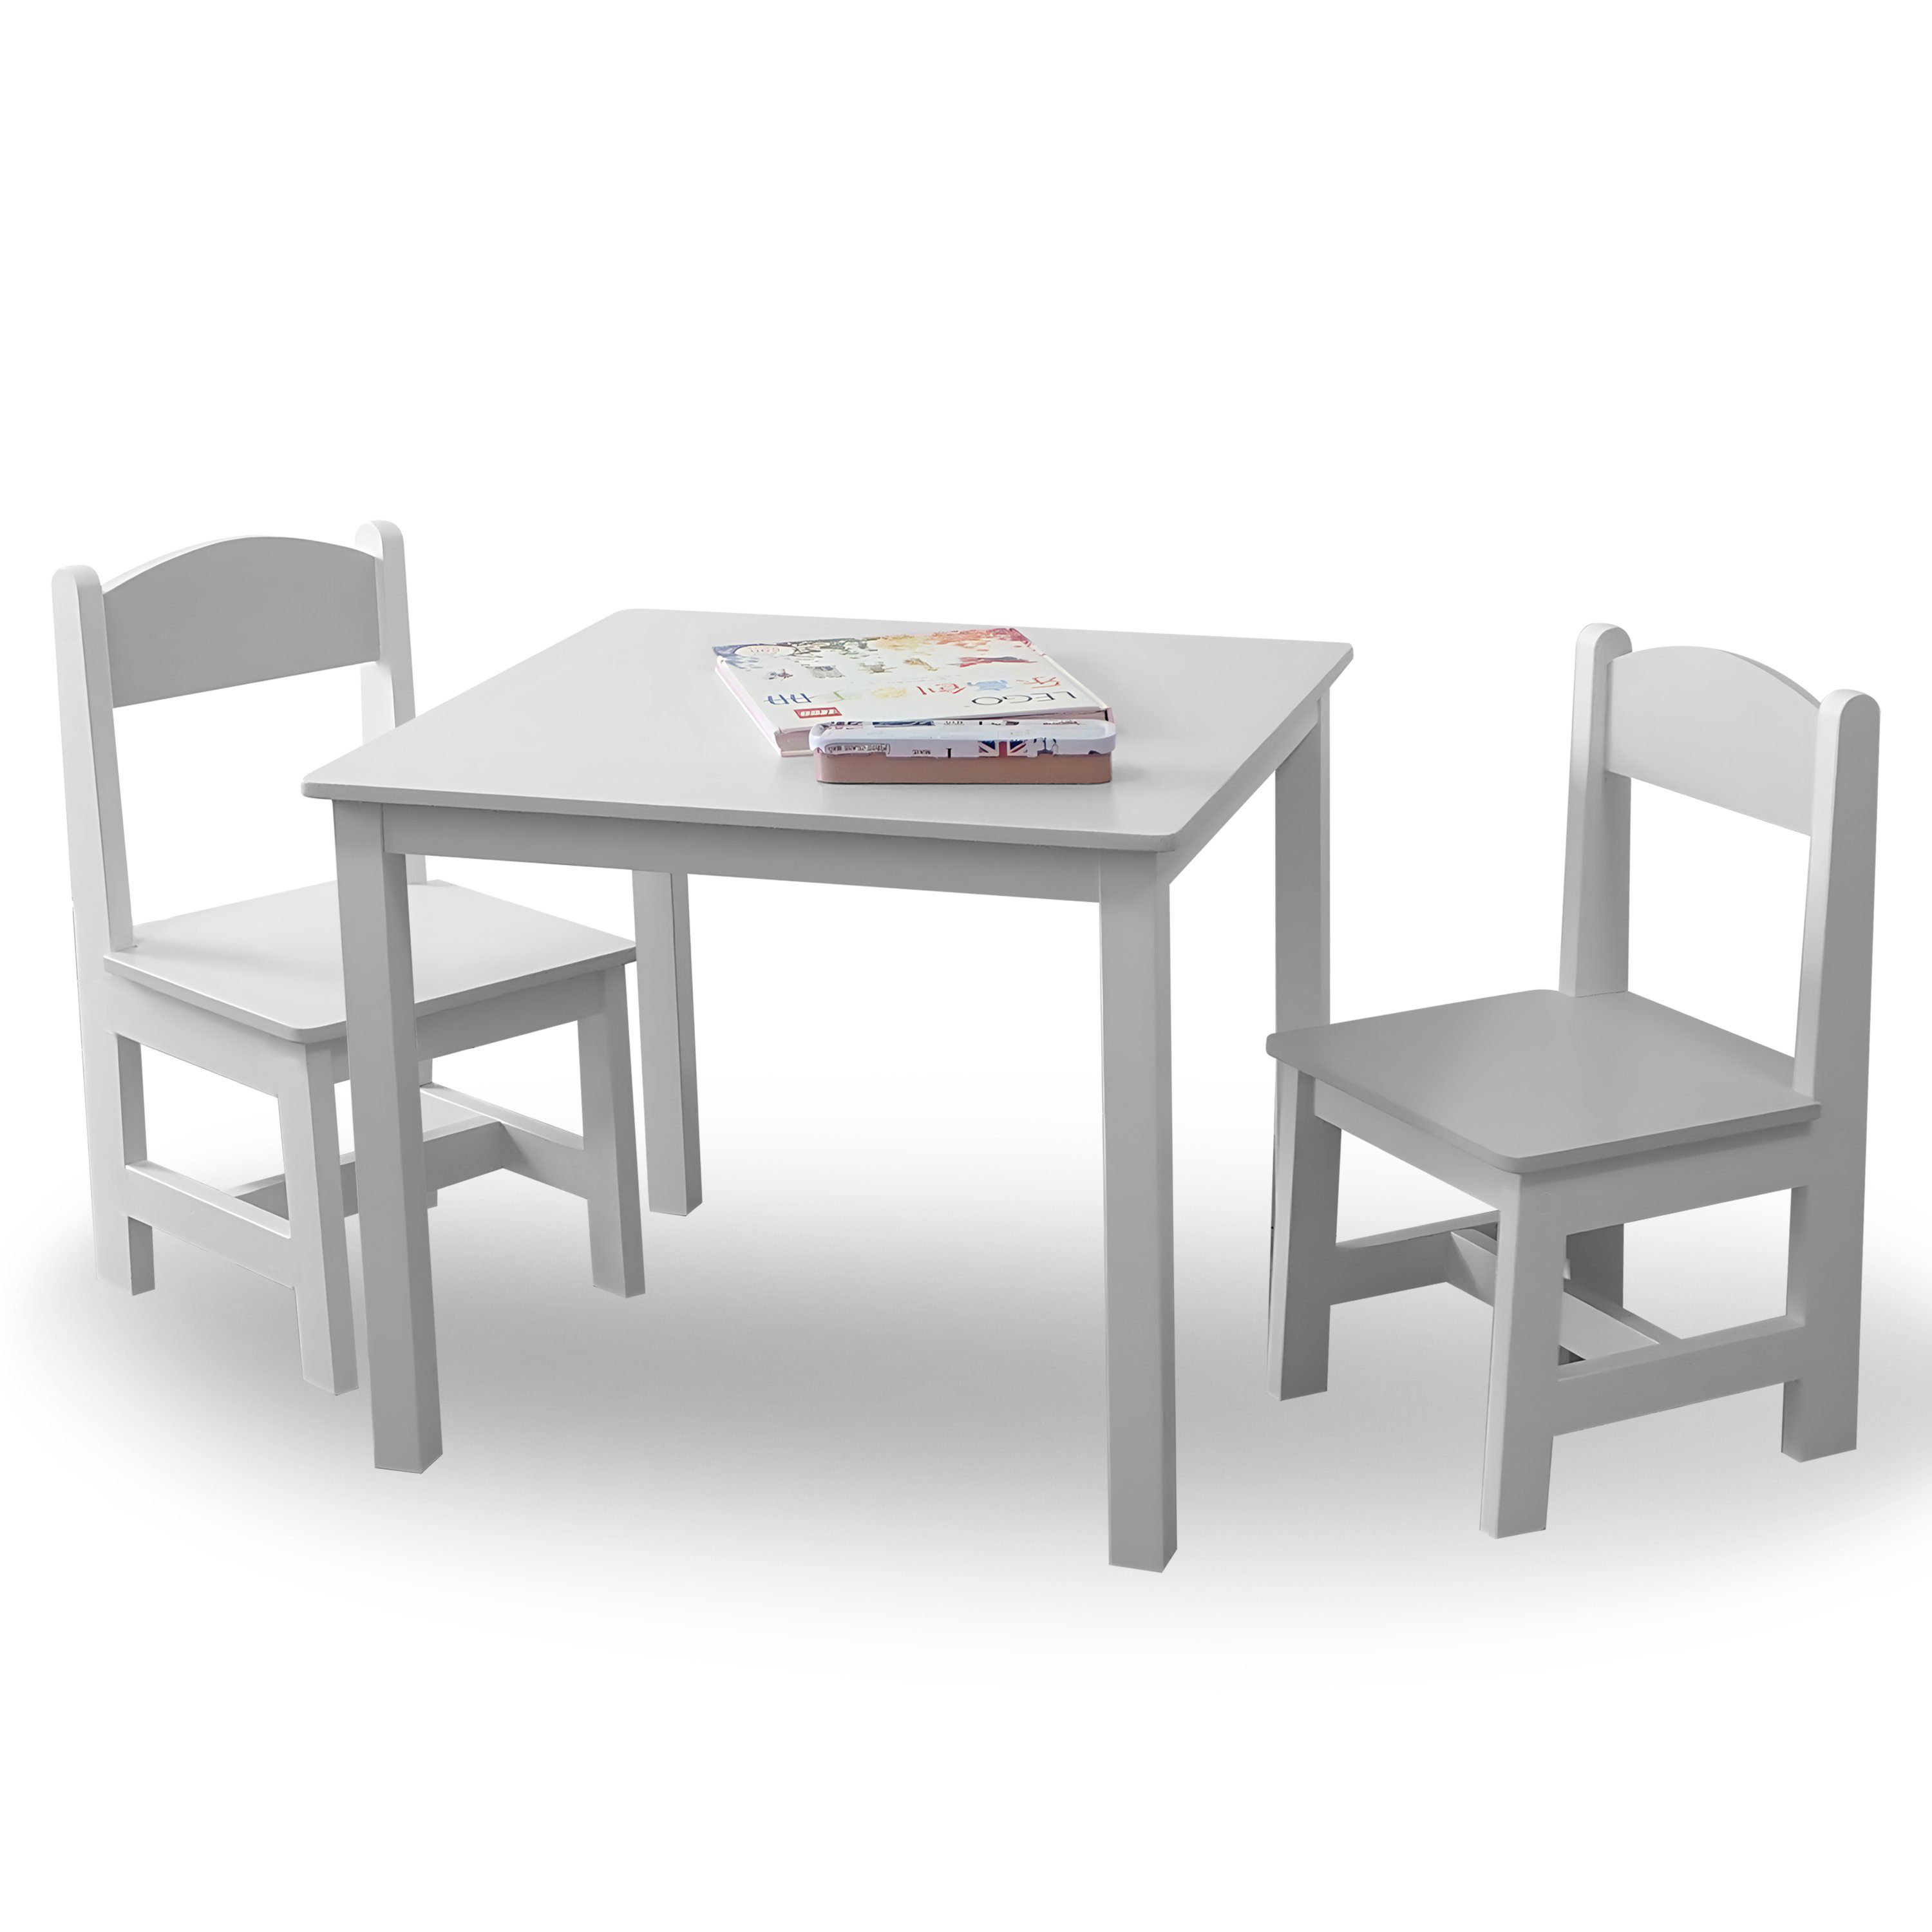 Aufbauanleitung Inklusive Kindermöbelset Hocker Stühle Kindertisch deutscher leicht Maltisch verständlicher 60x50x50cm, Kindersitzgruppe 2 in habeig &